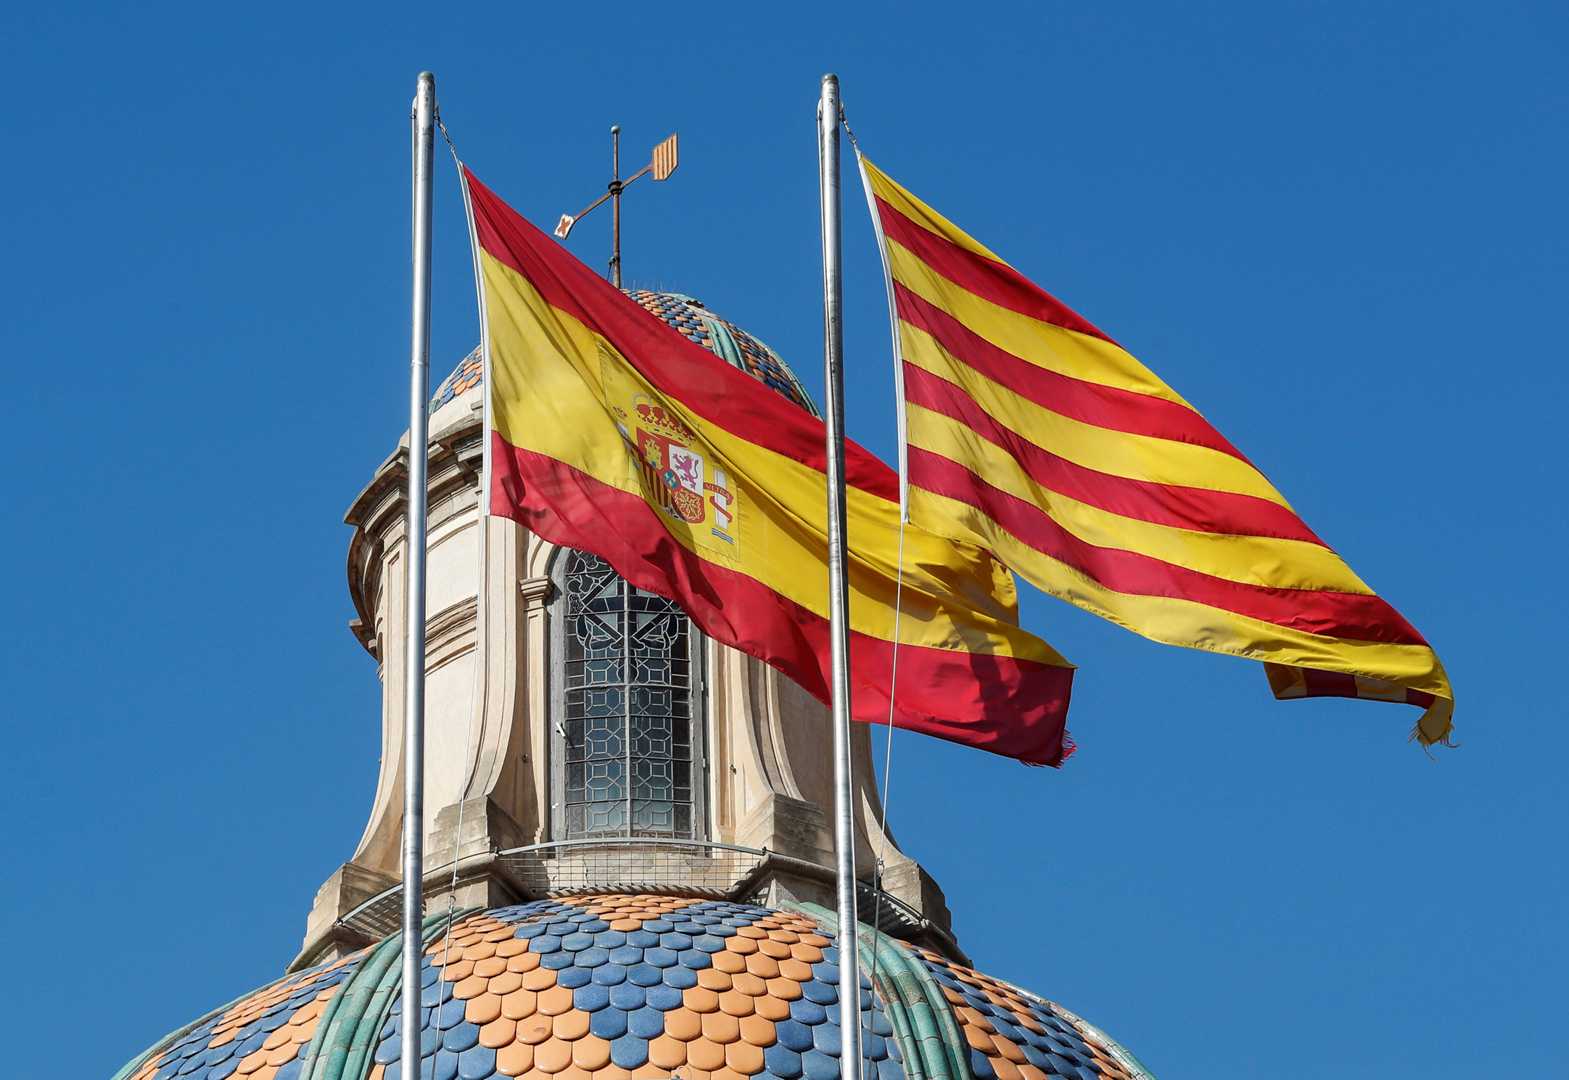 Bandiera Spagna Catalunya 001 1080 small